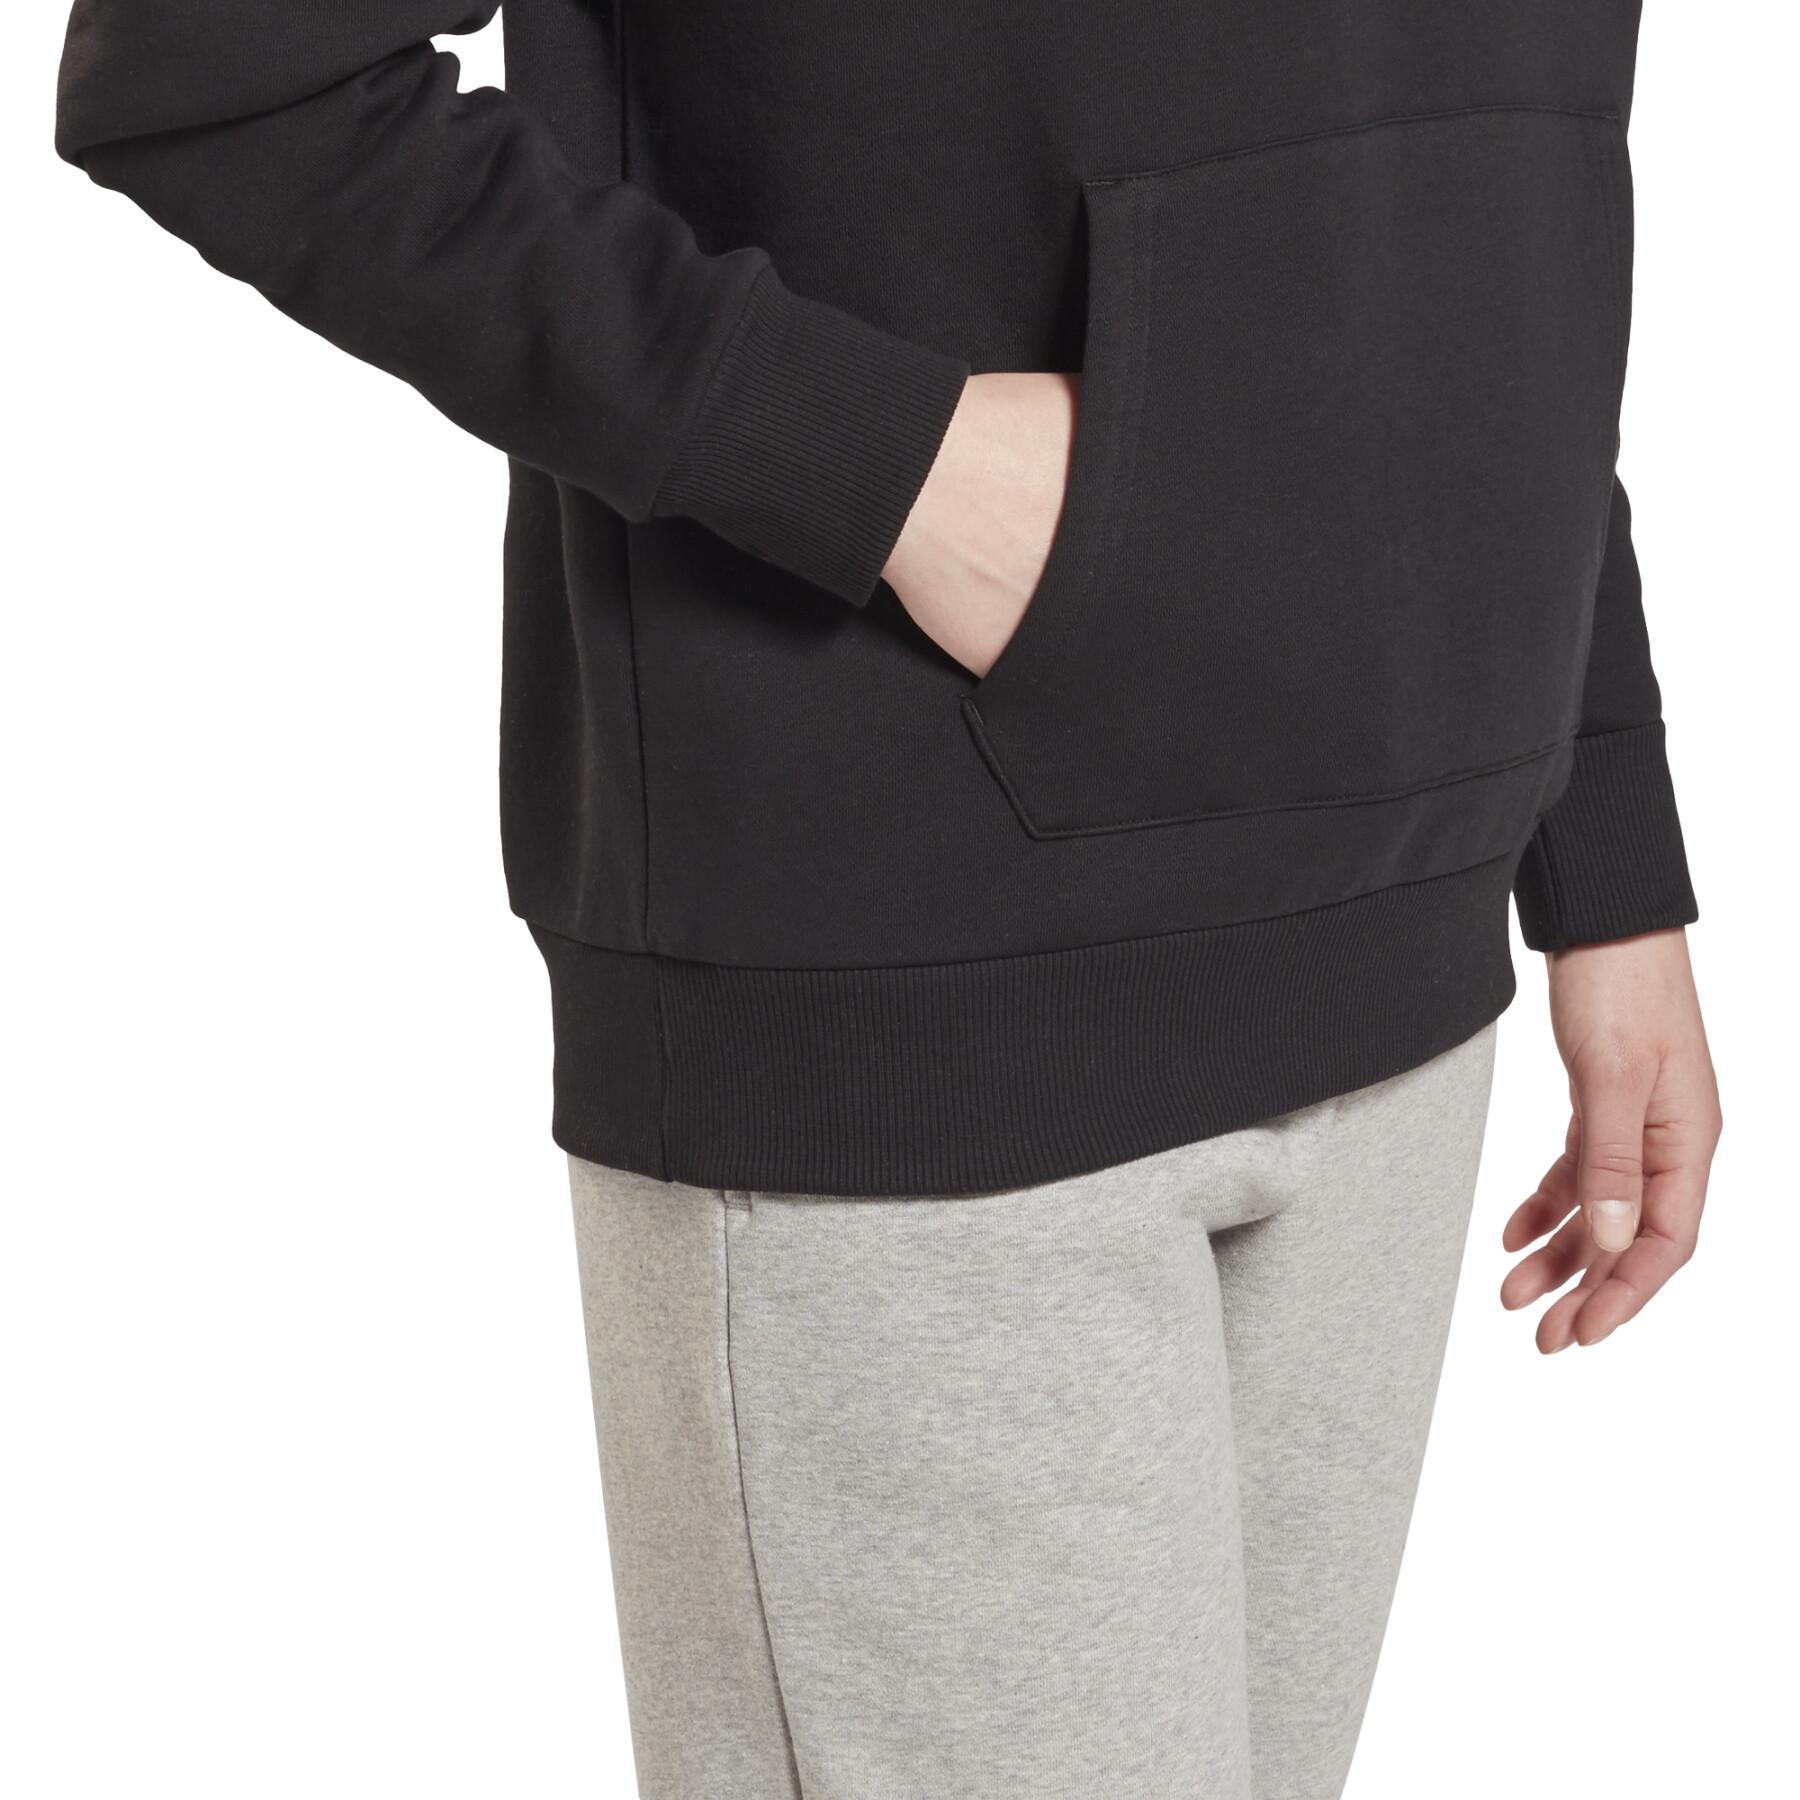 Women's hoodie Reebok Identity Fleece